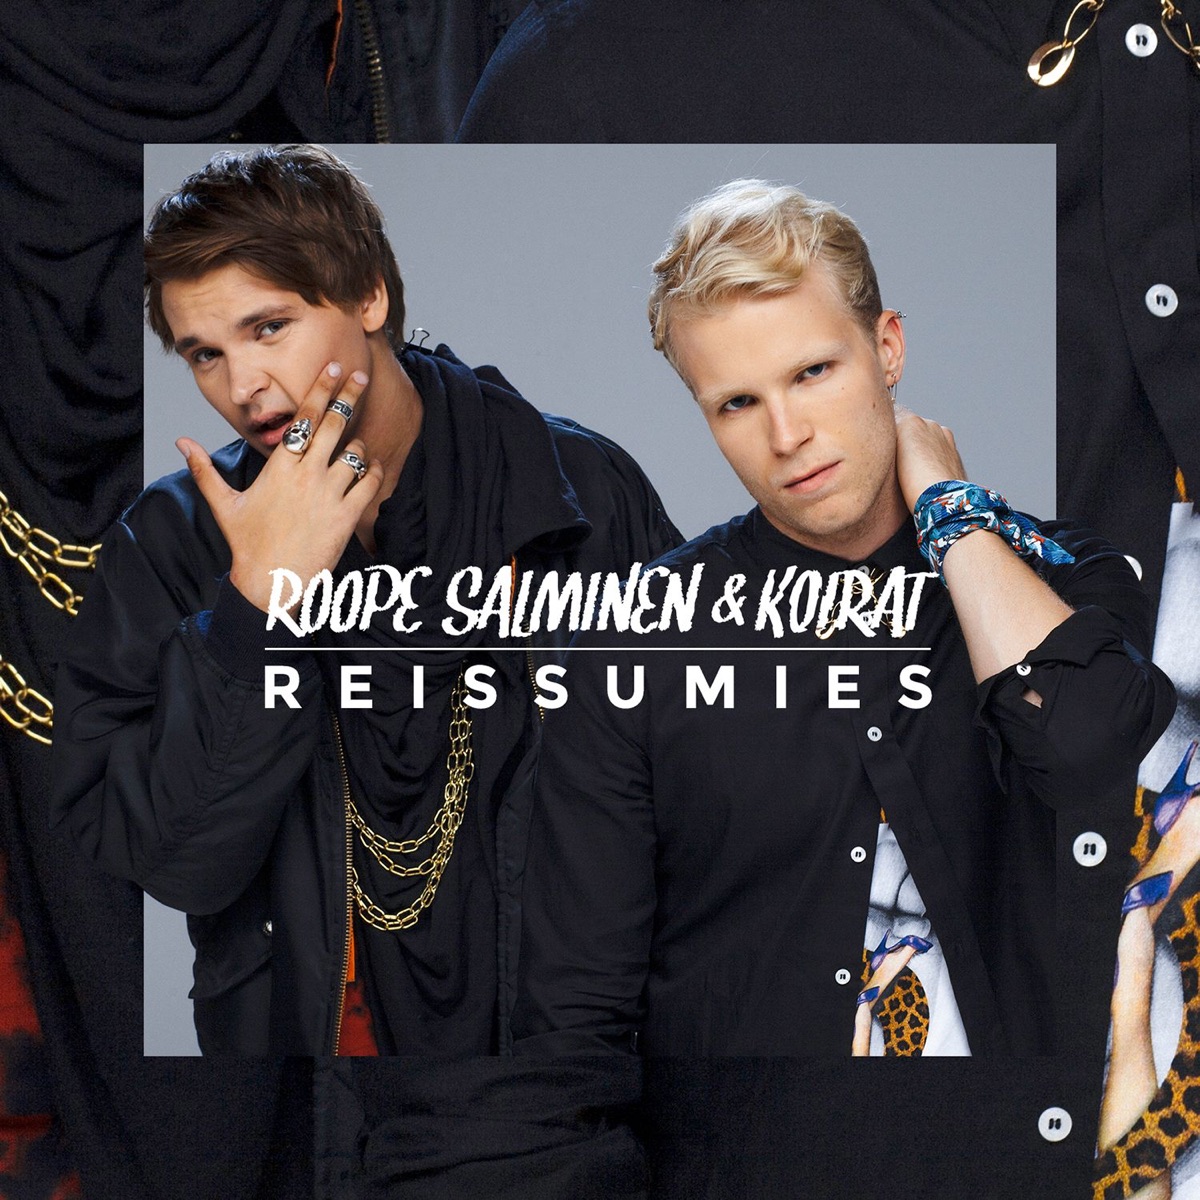 Sinulle mutsi - Single - Album by Roope Salminen & Koirat - Apple Music